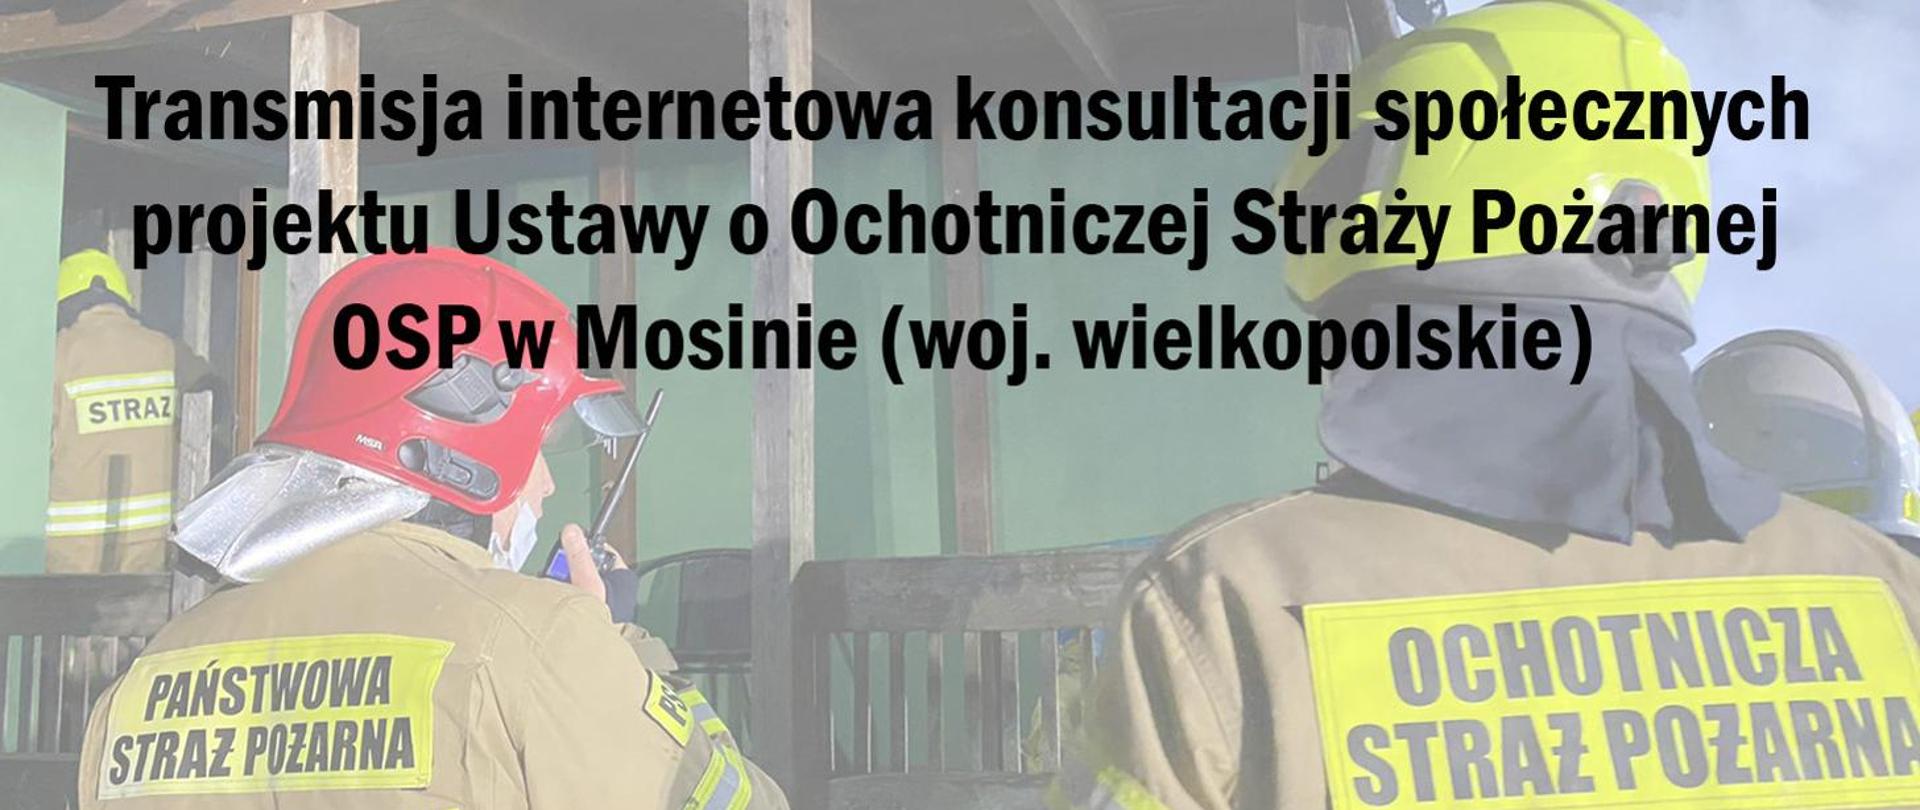 Zdjęcie przedstawia napis Transmisja online – konsultacje społeczne projektu Ustawy o Ochotniczej Straży Pożarnej, z udziałem Komendanta Głównego PSP